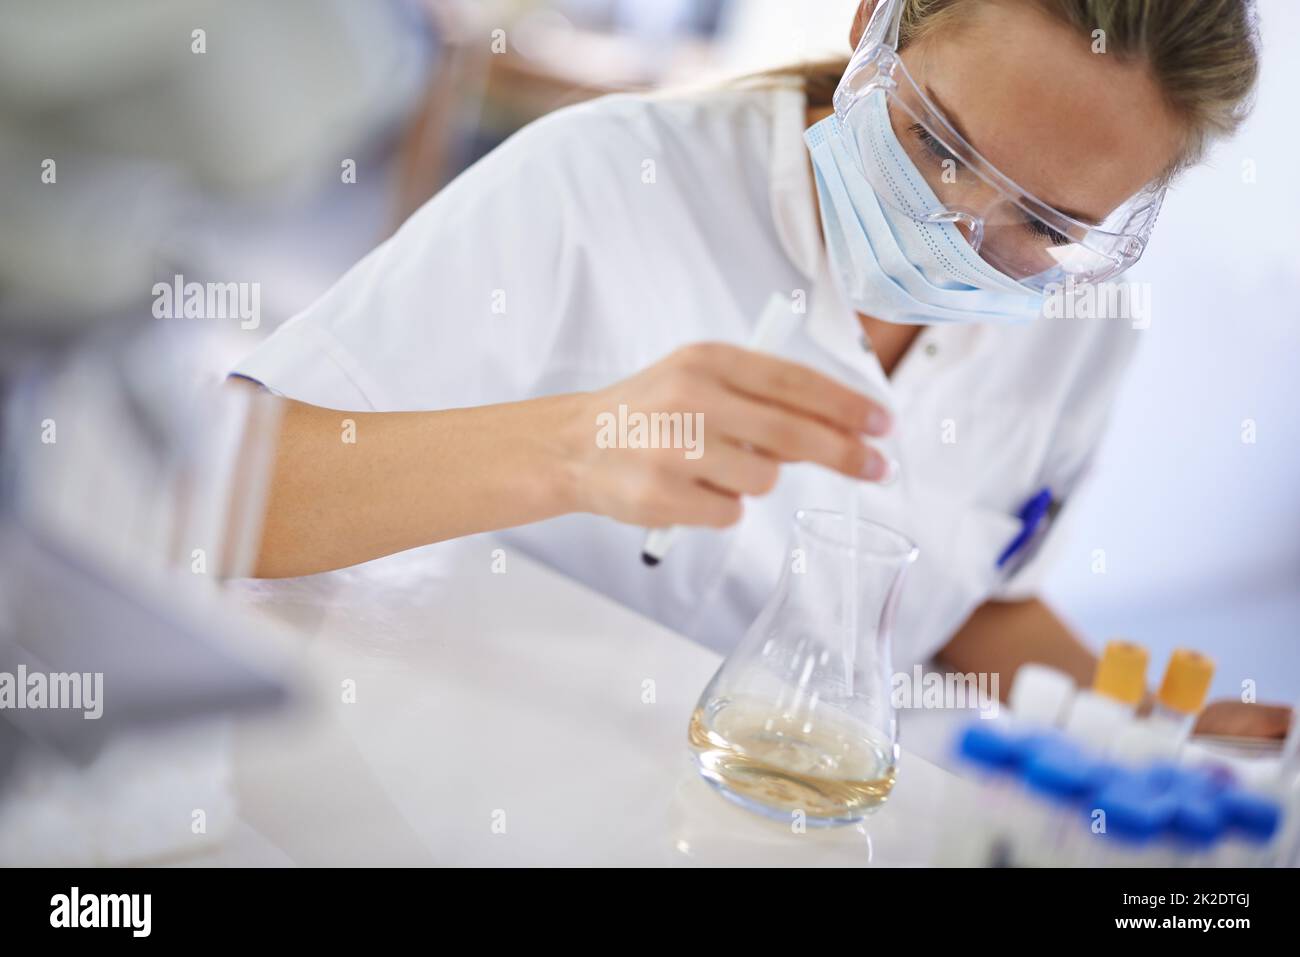 Sorgfältige, sorgfältige Arbeit. Eine junge Wissenschaftlerin, die in ihrem Labor ein Experiment durchführt. Stockfoto